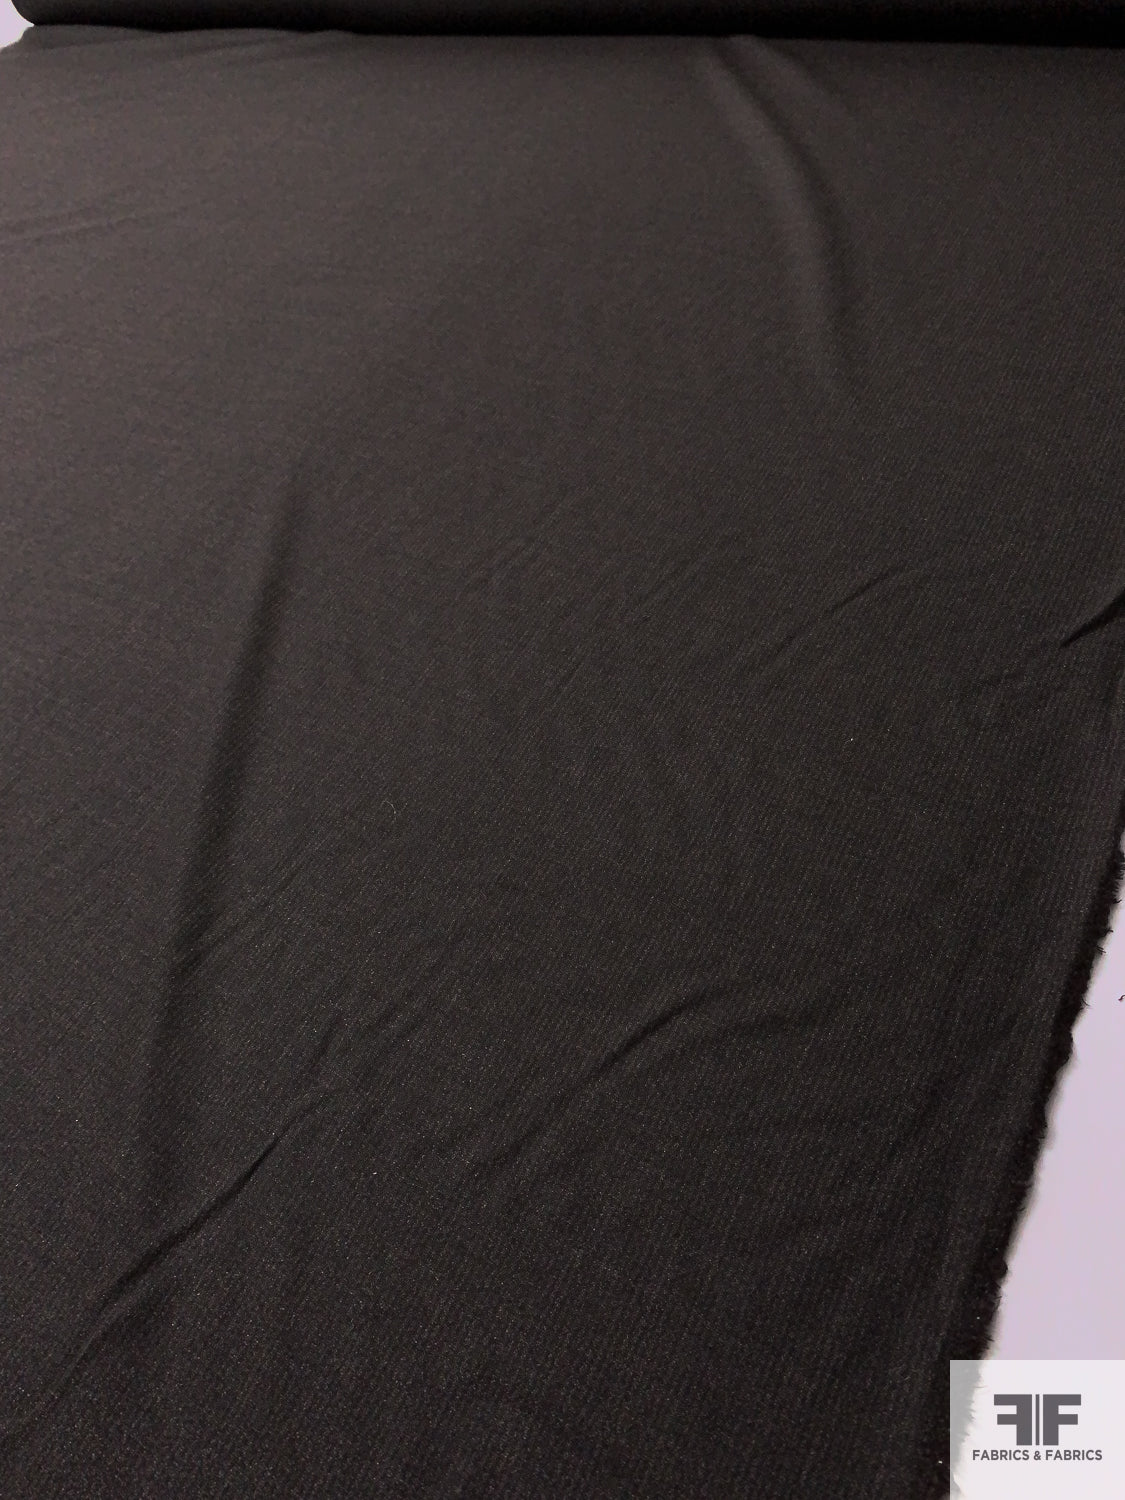 Shadow Striped Lightweight Wool Tweed Suiting - Black / Ecru